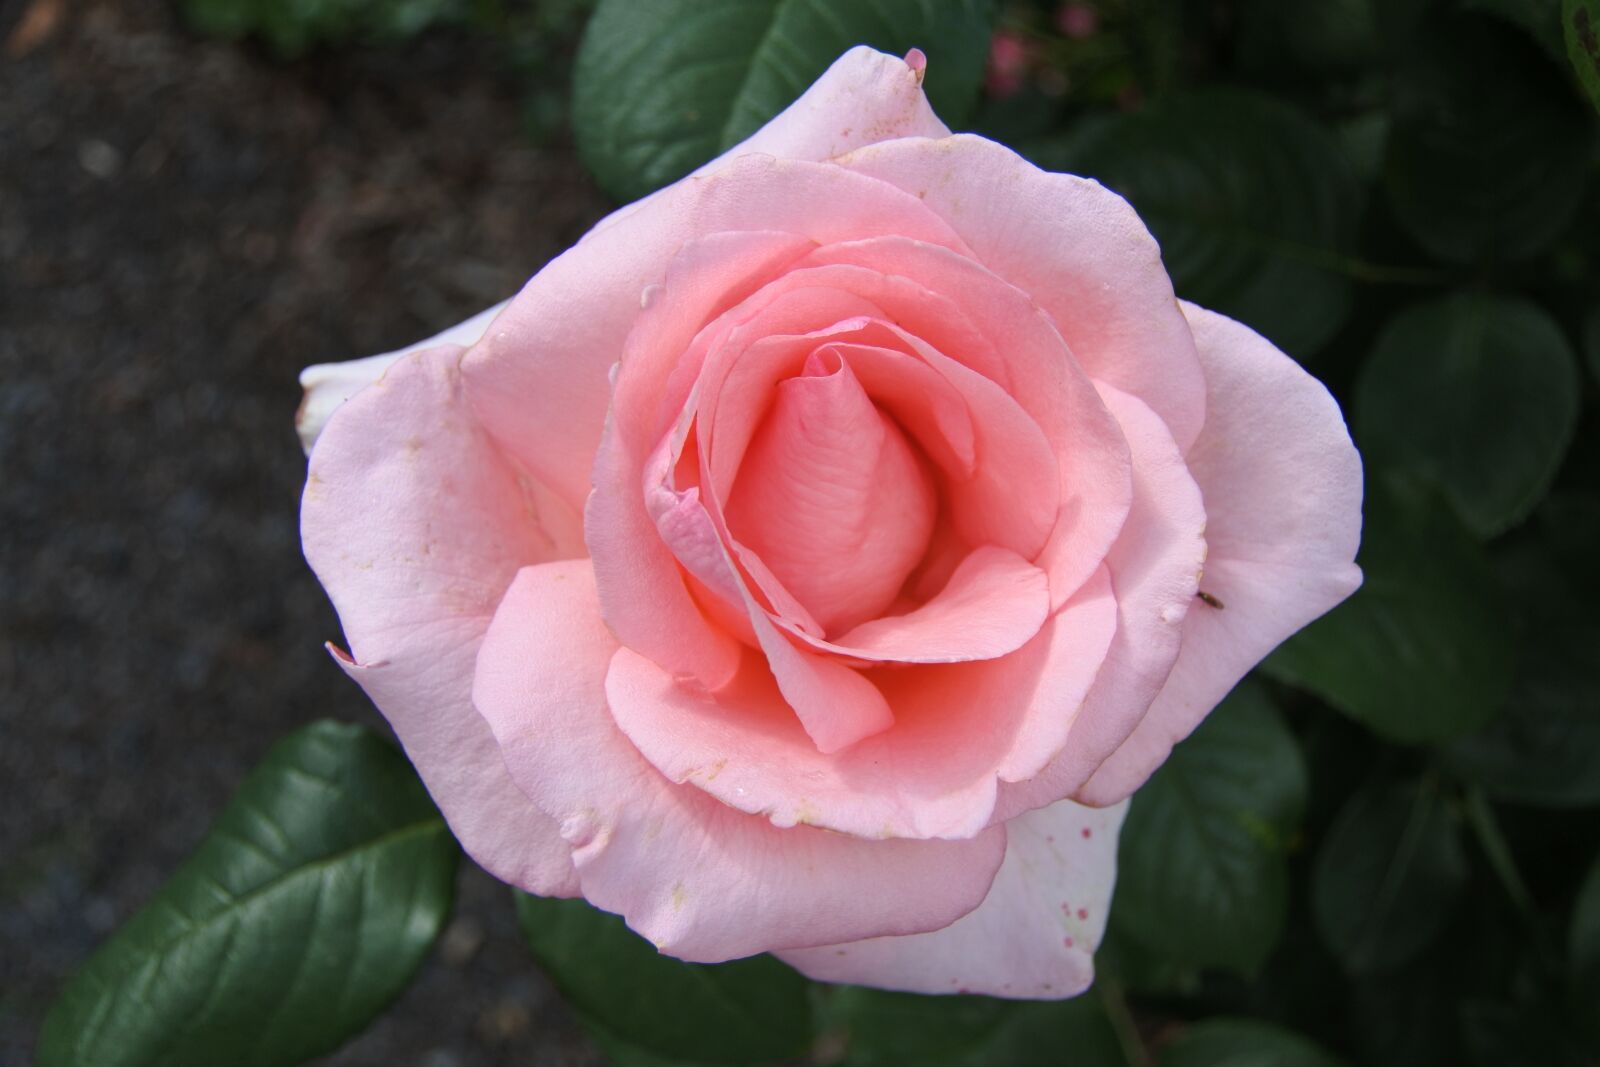 1 NIKKOR VR 10-100mm f/4-5.6 sample photo. Flower, rose, petal photography